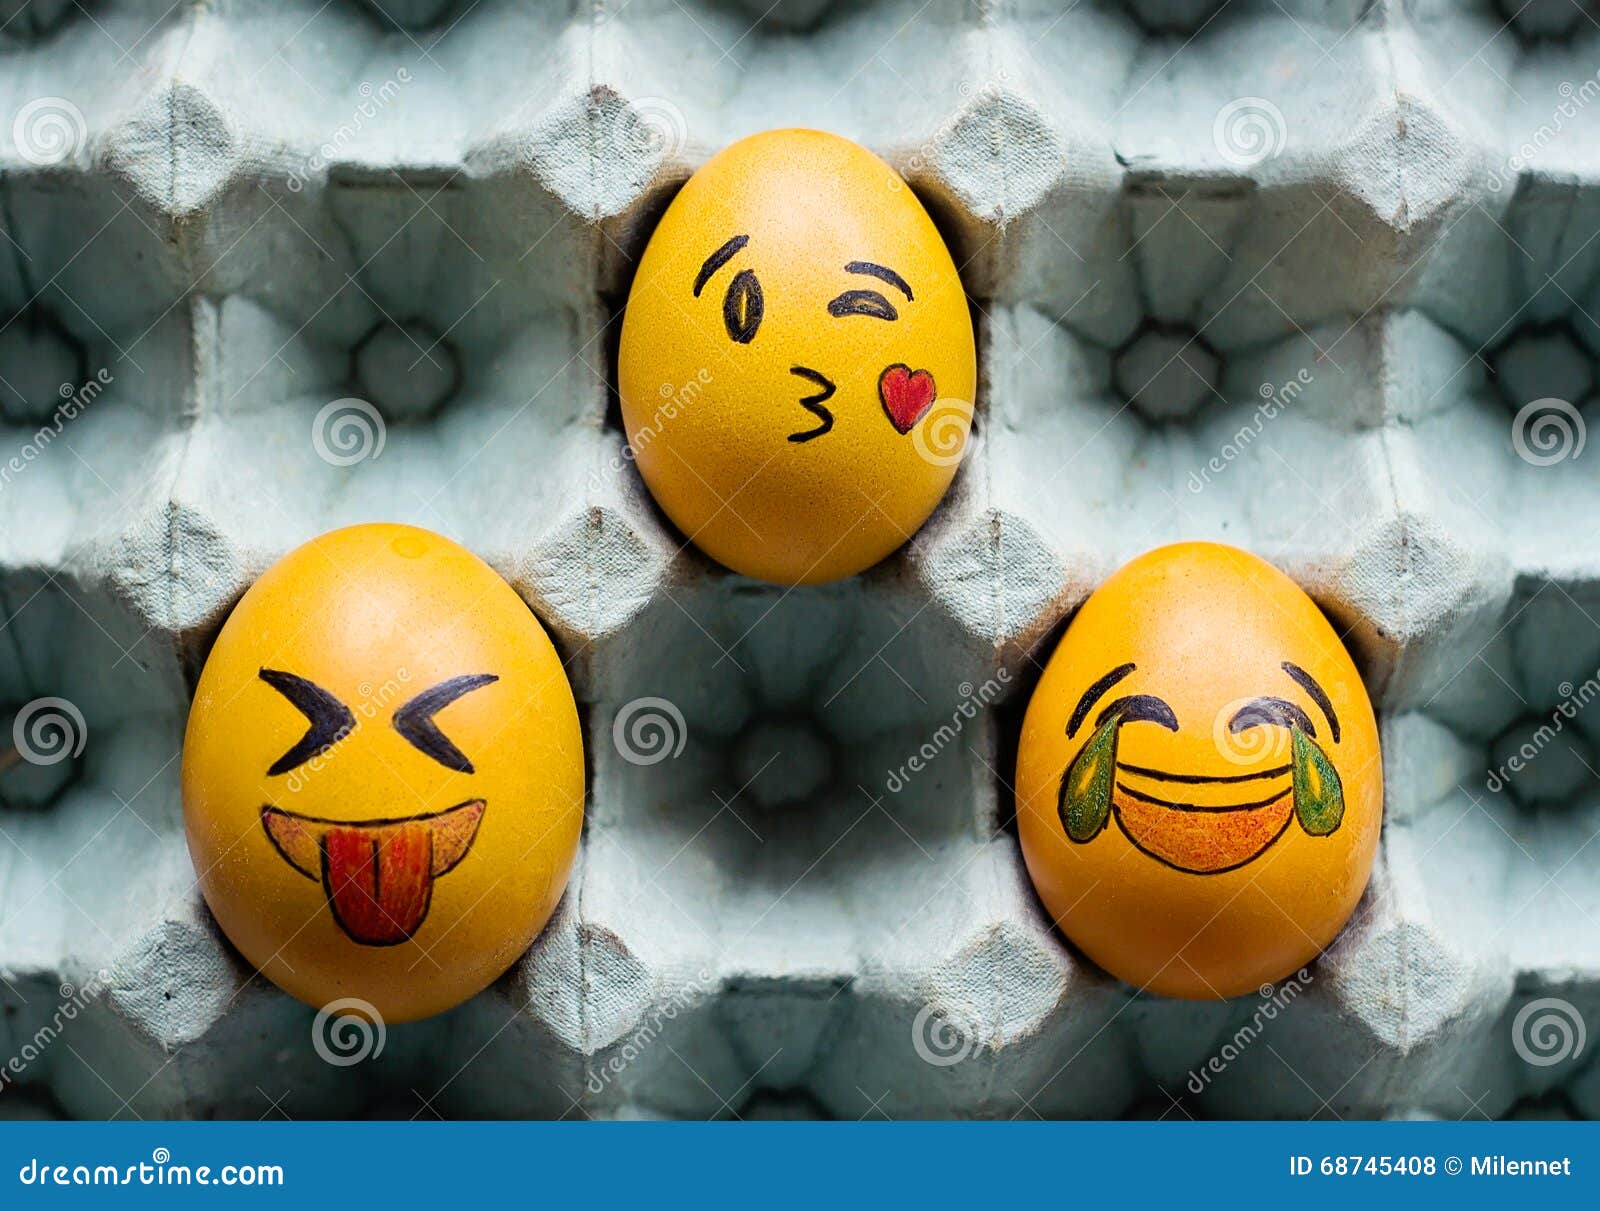 Смайлик яйца. Смайлики на яйцах. Рожицы на яйцах. Яйца в виде смайликов. Рожицы на яйцах к Пасхе.